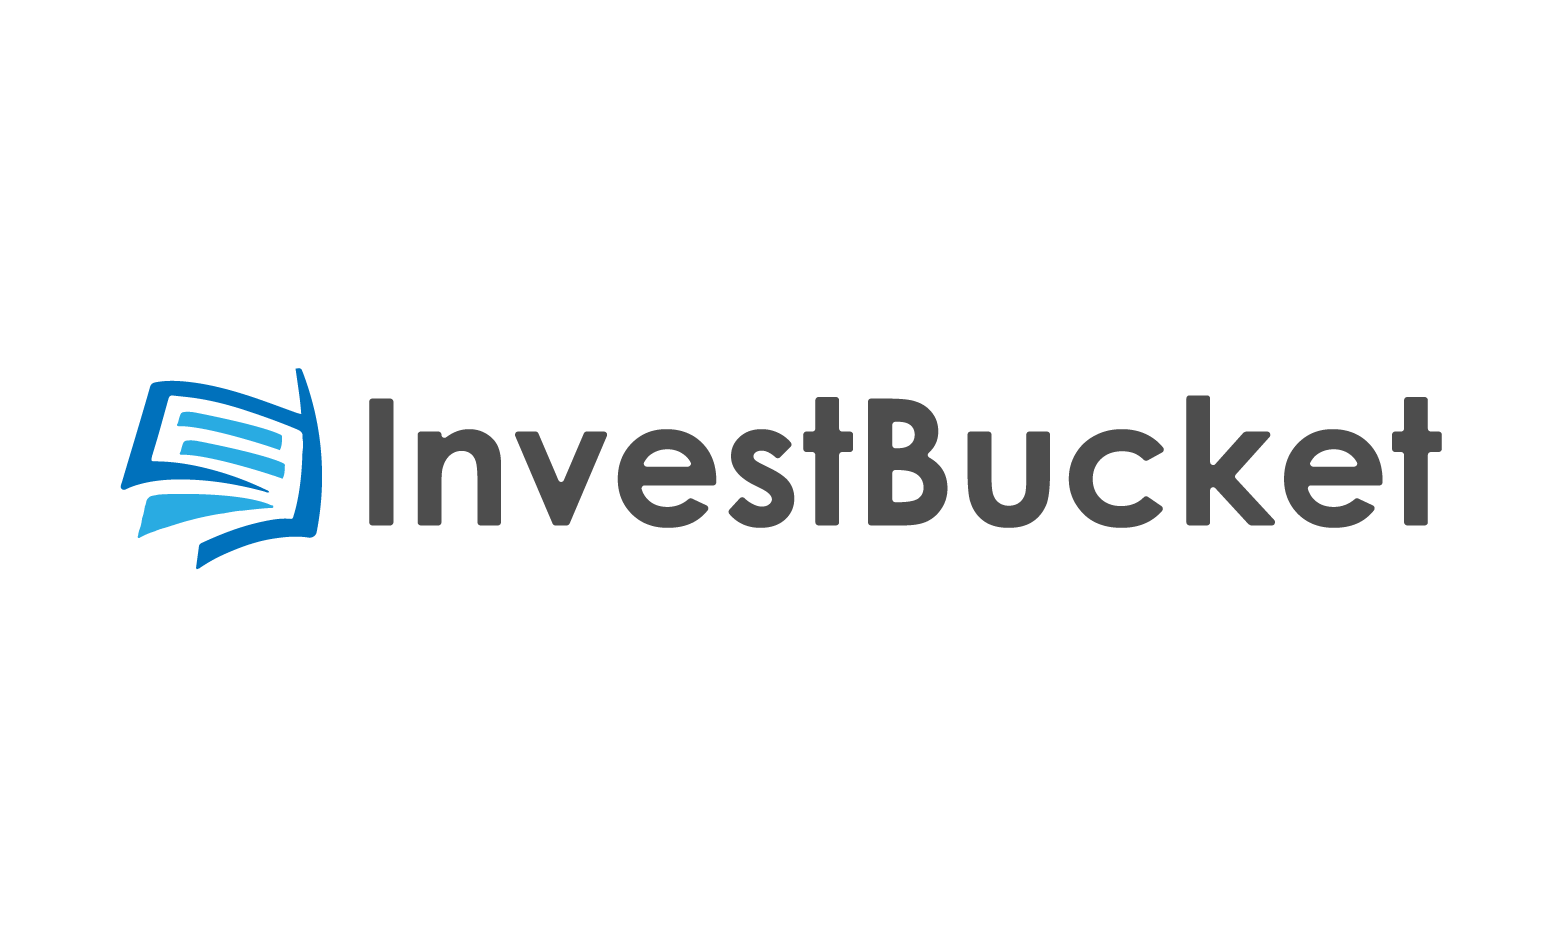 InvestBucket.com - Creative brandable domain for sale